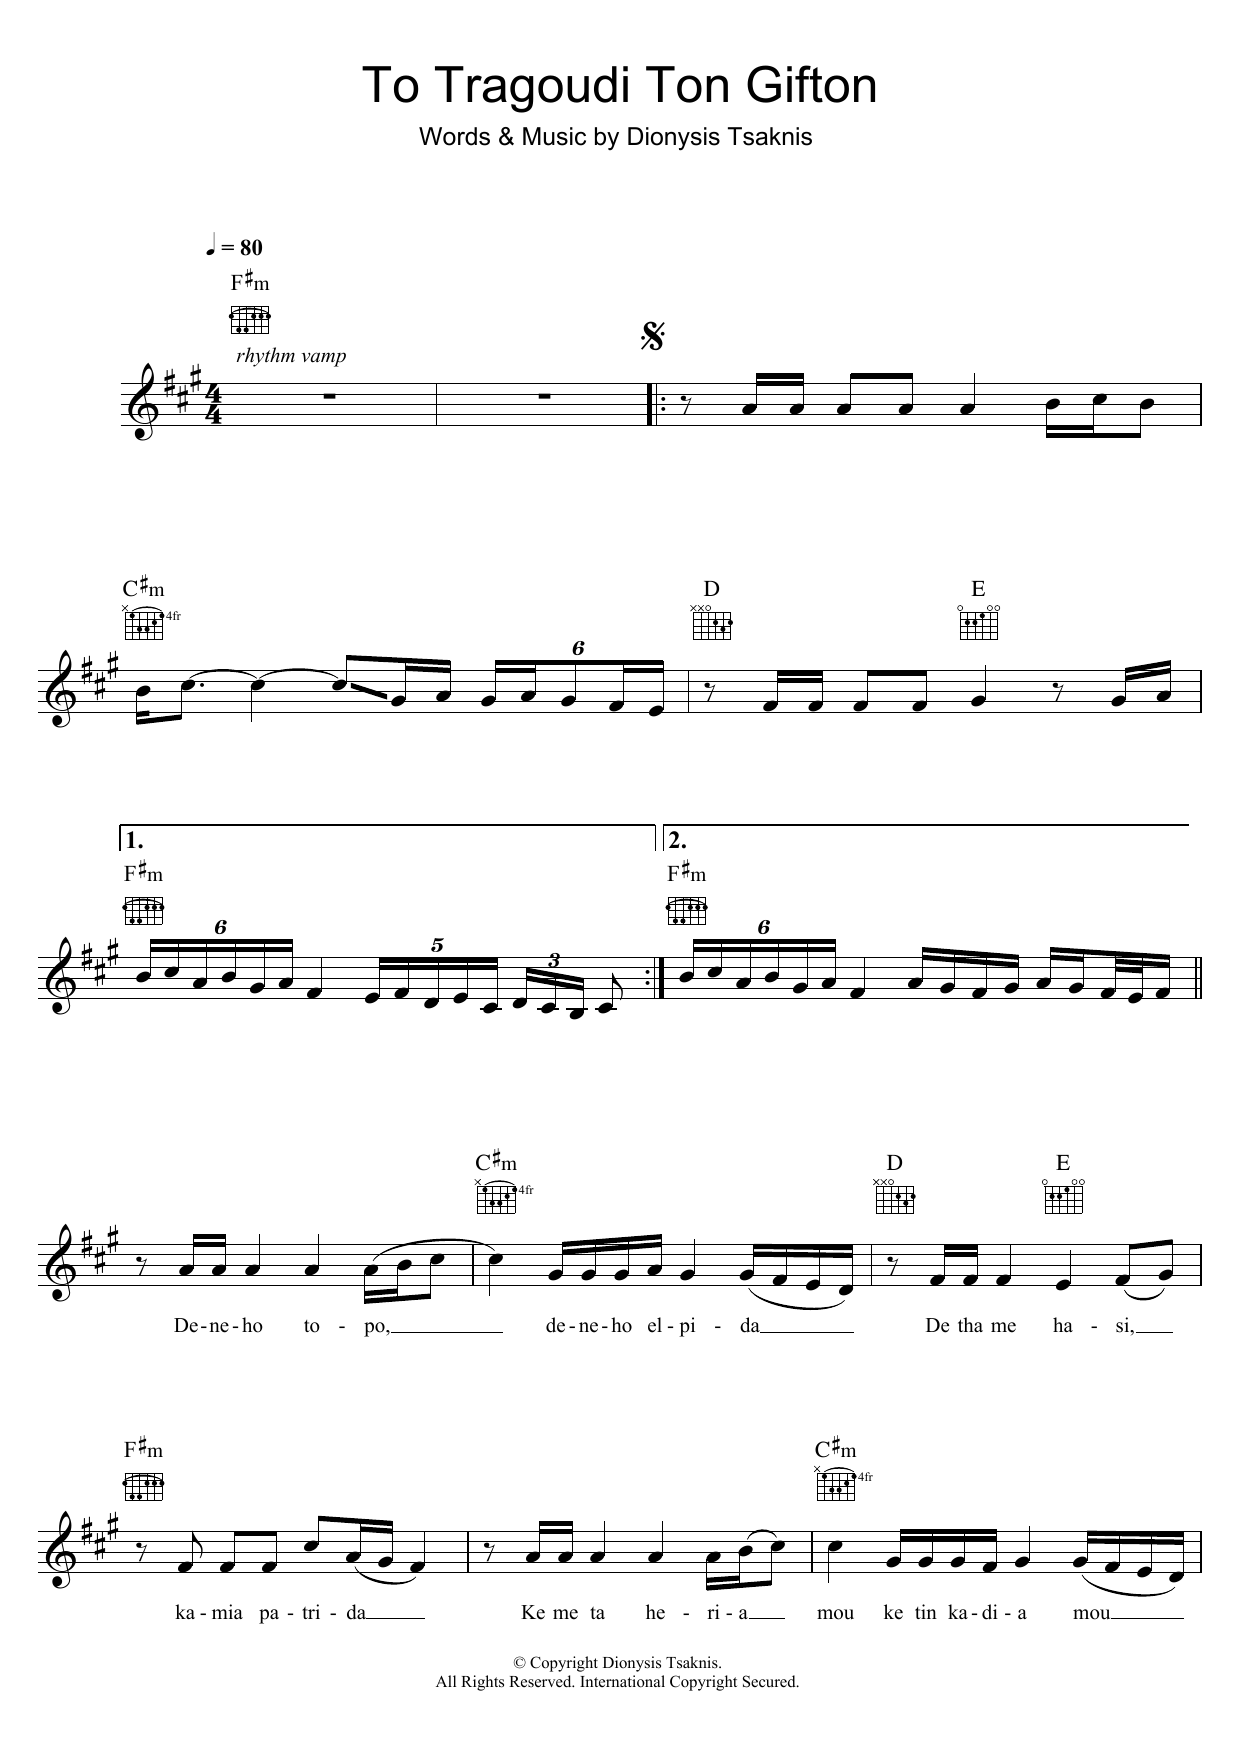 Dionysis Tsaknis To Tragoudi Ton Gyfton Sheet Music Notes & Chords for Melody Line, Lyrics & Chords - Download or Print PDF